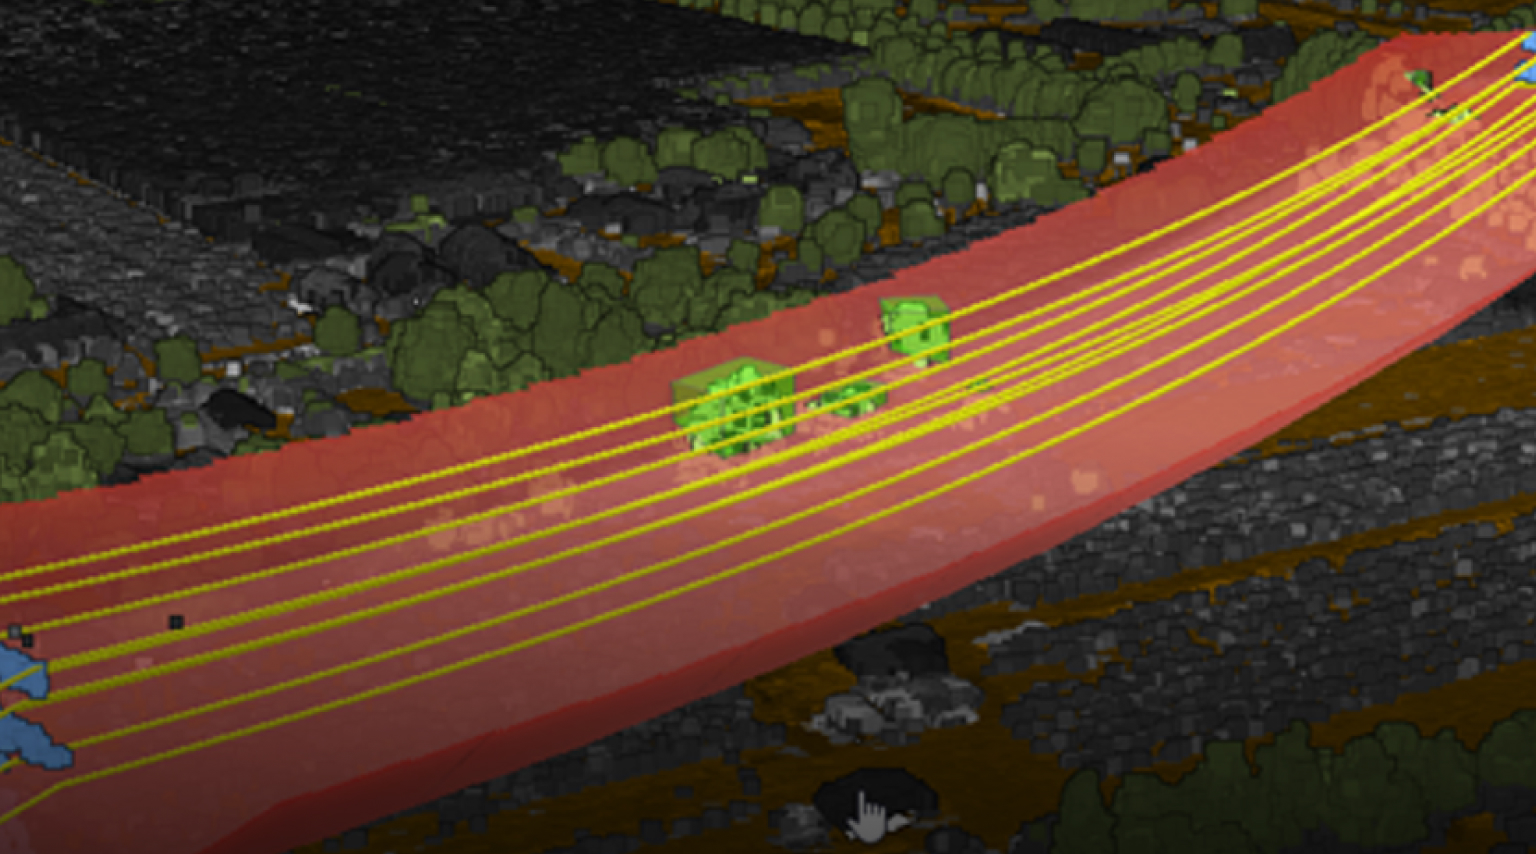 Imagem Lidar 3D mostrando edifícios cinzas, árvores verdes e linhas de energia em amarelo